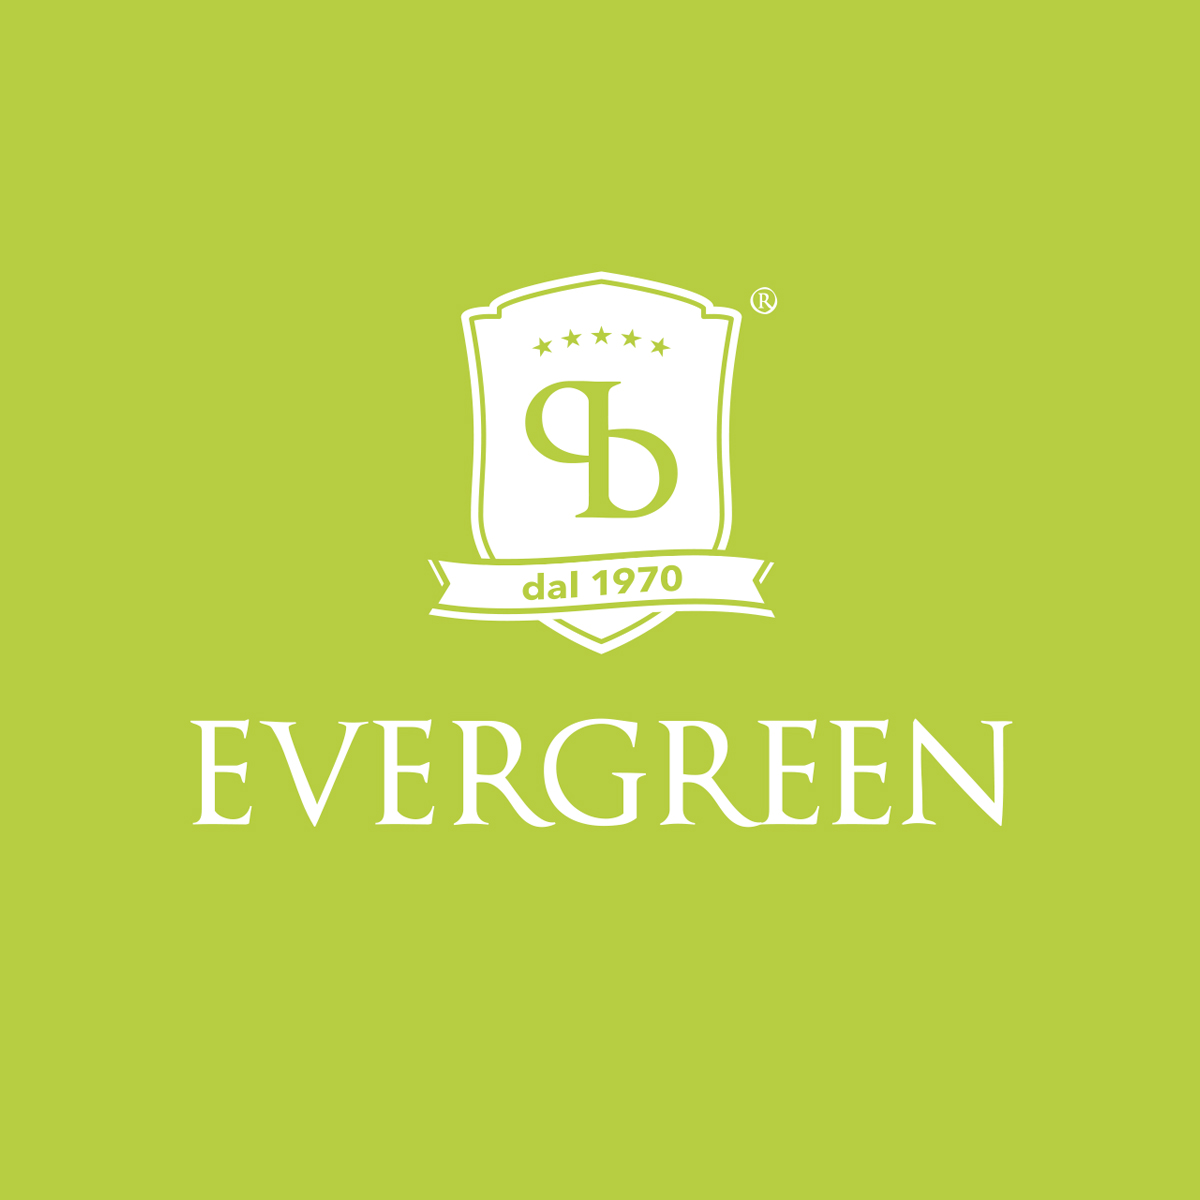 Logo produttore Evergreen Pistacchio di Bronte